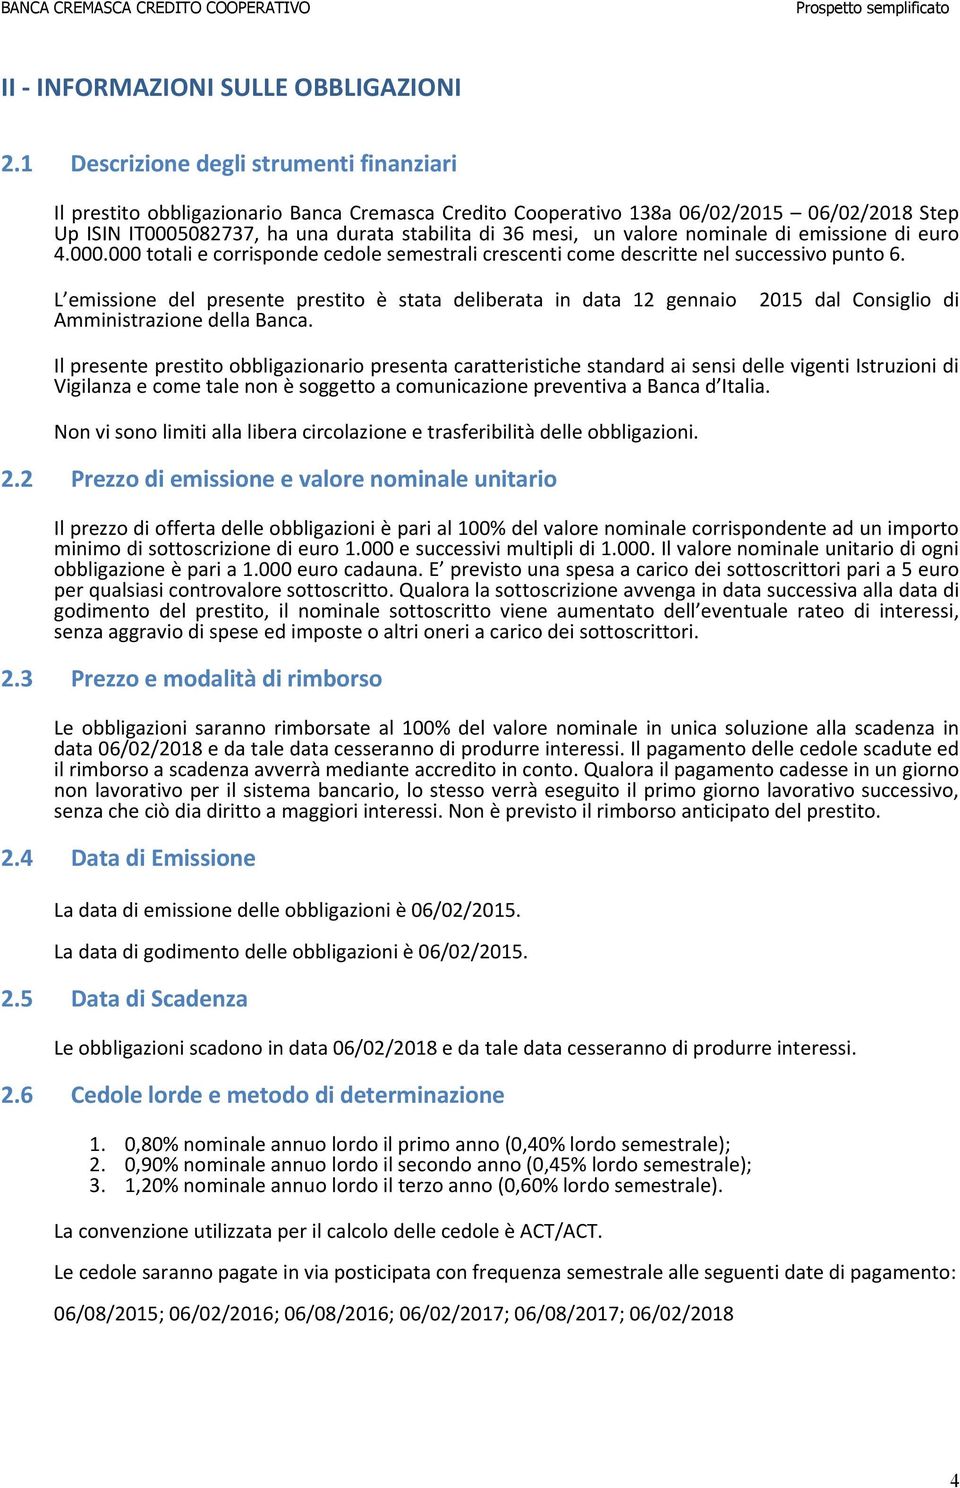 valore nominale di emissione di euro 4.000.000 totali e corrisponde cedole semestrali crescenti come descritte nel successivo punto 6.